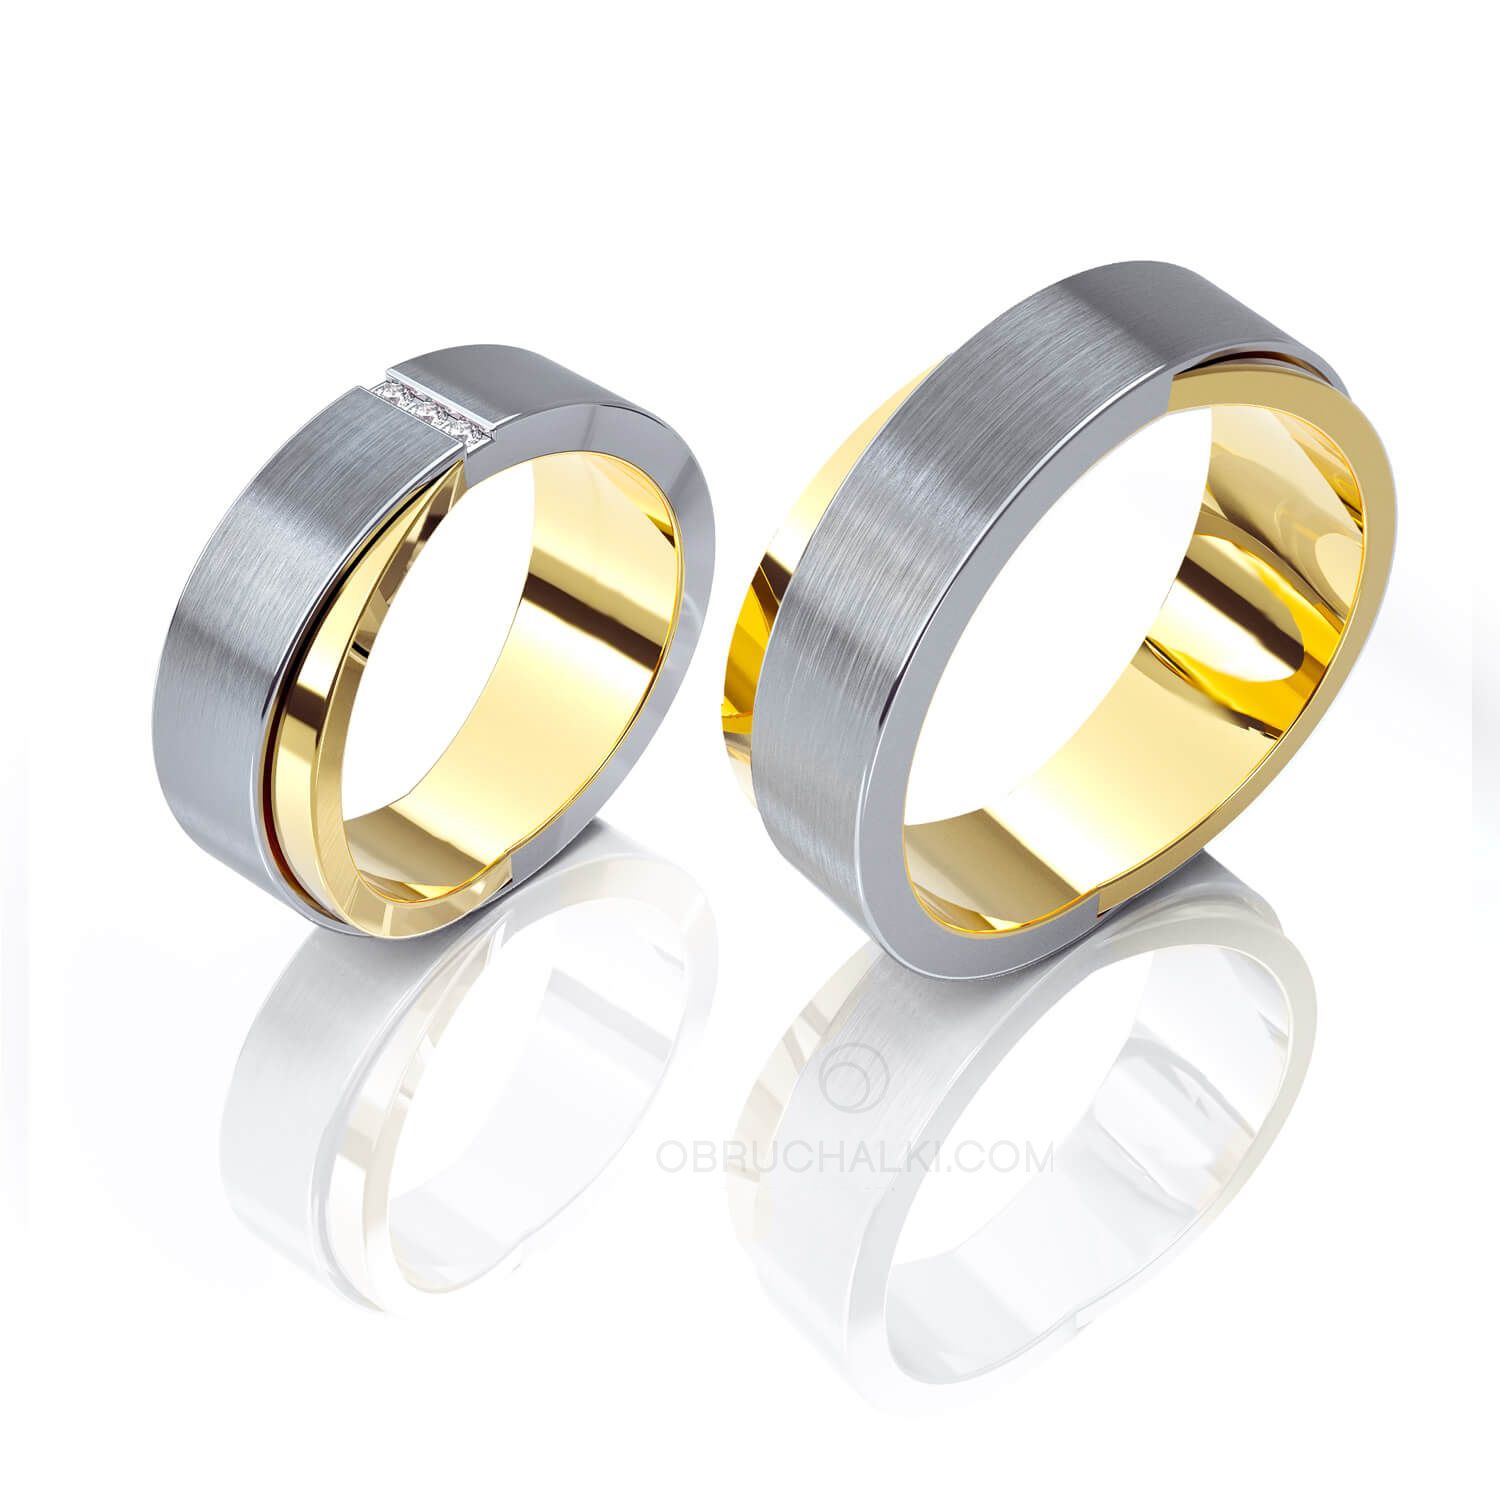 Обручальные комбинированные кольца 2 кольца в 1 на заказ из белого и желтого золота, серебра, платины или своего металла